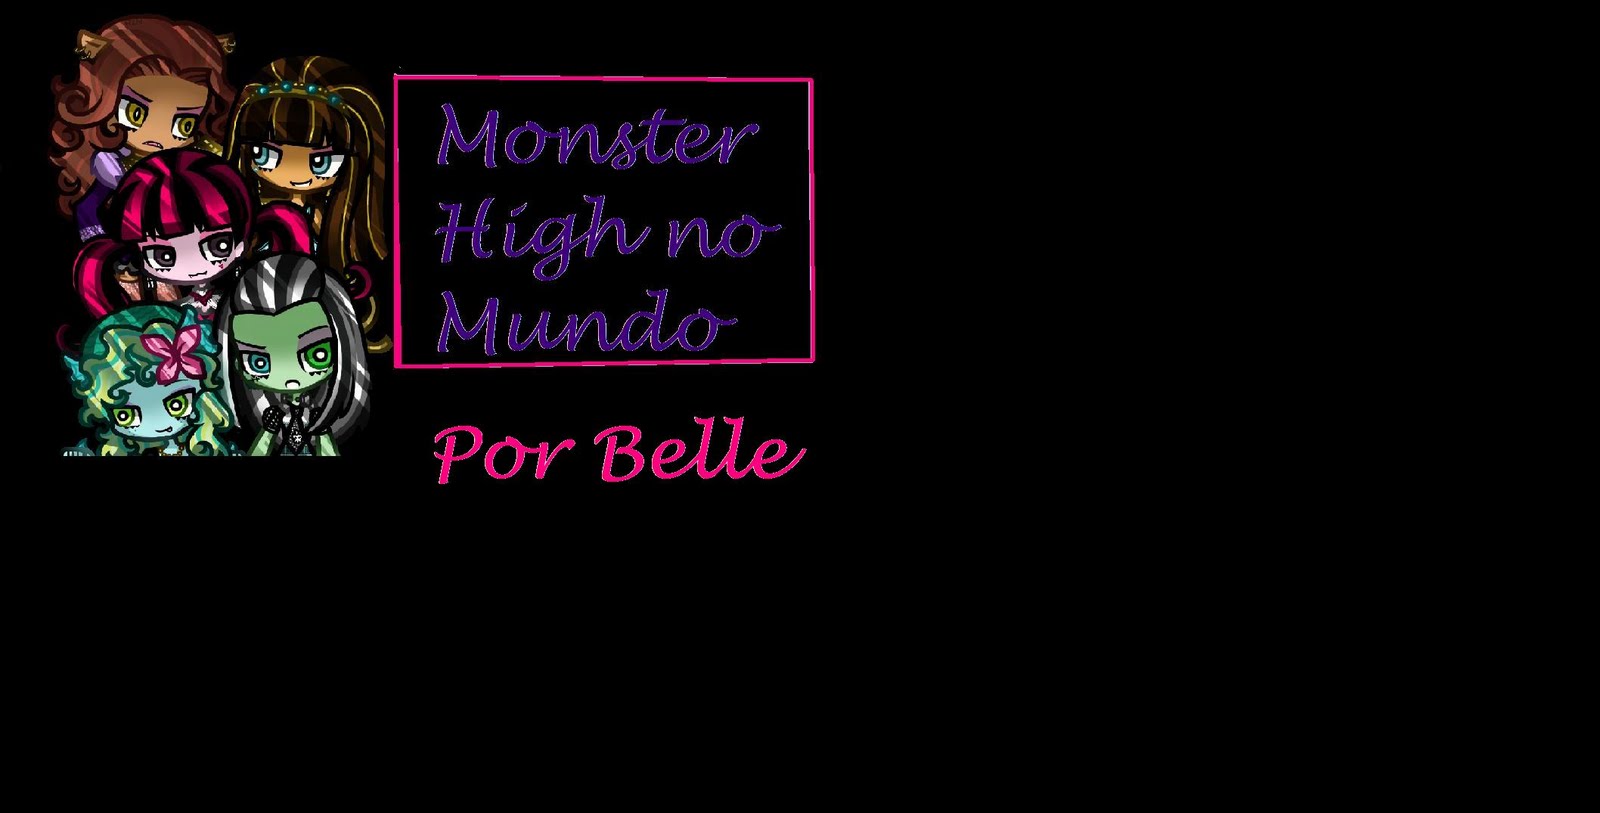 Monster High no Mundo